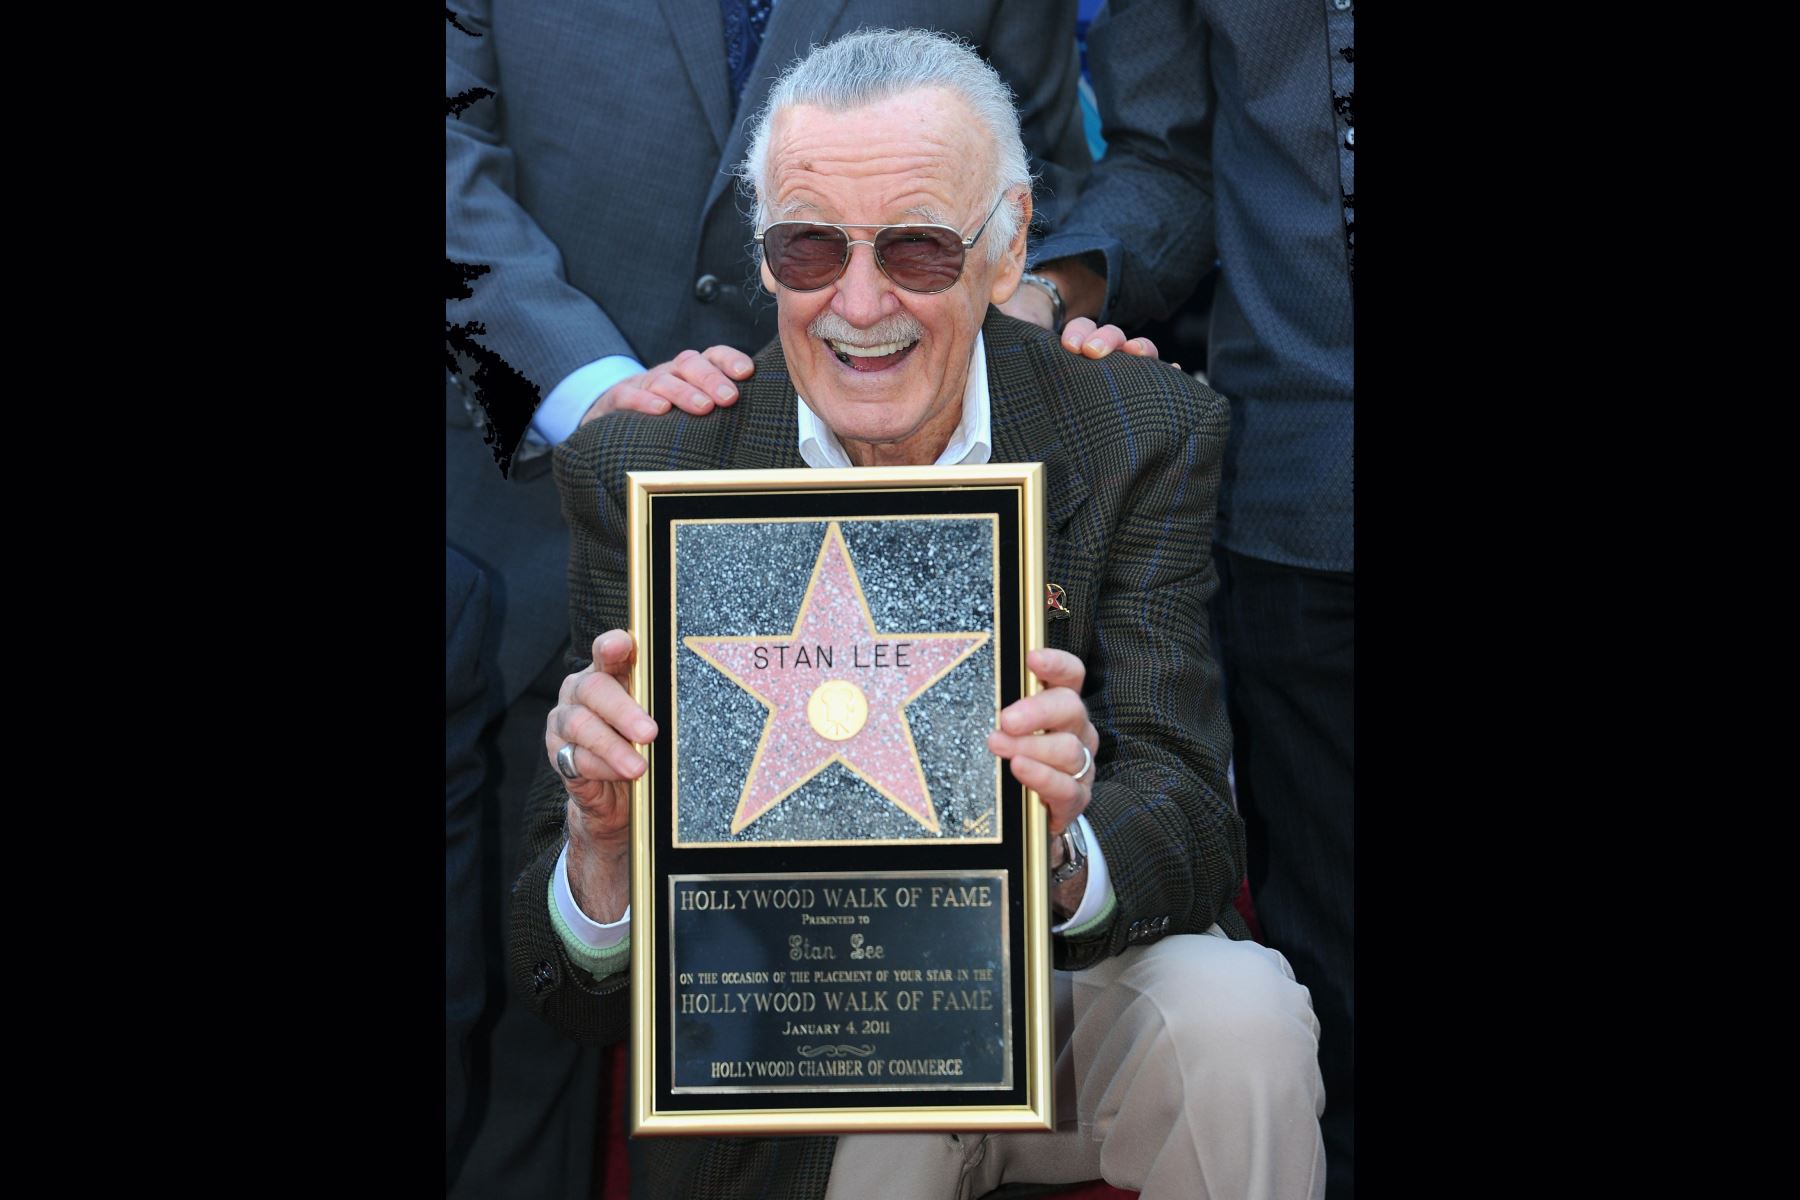 Stan Lee, una leyenda del cómic, asiste a una ceremonia que lo honra con la estrella 2,428 en el Paseo de la Fama de Hollywood el 4 de enero de 2011 en Hollywood, California.  AFP